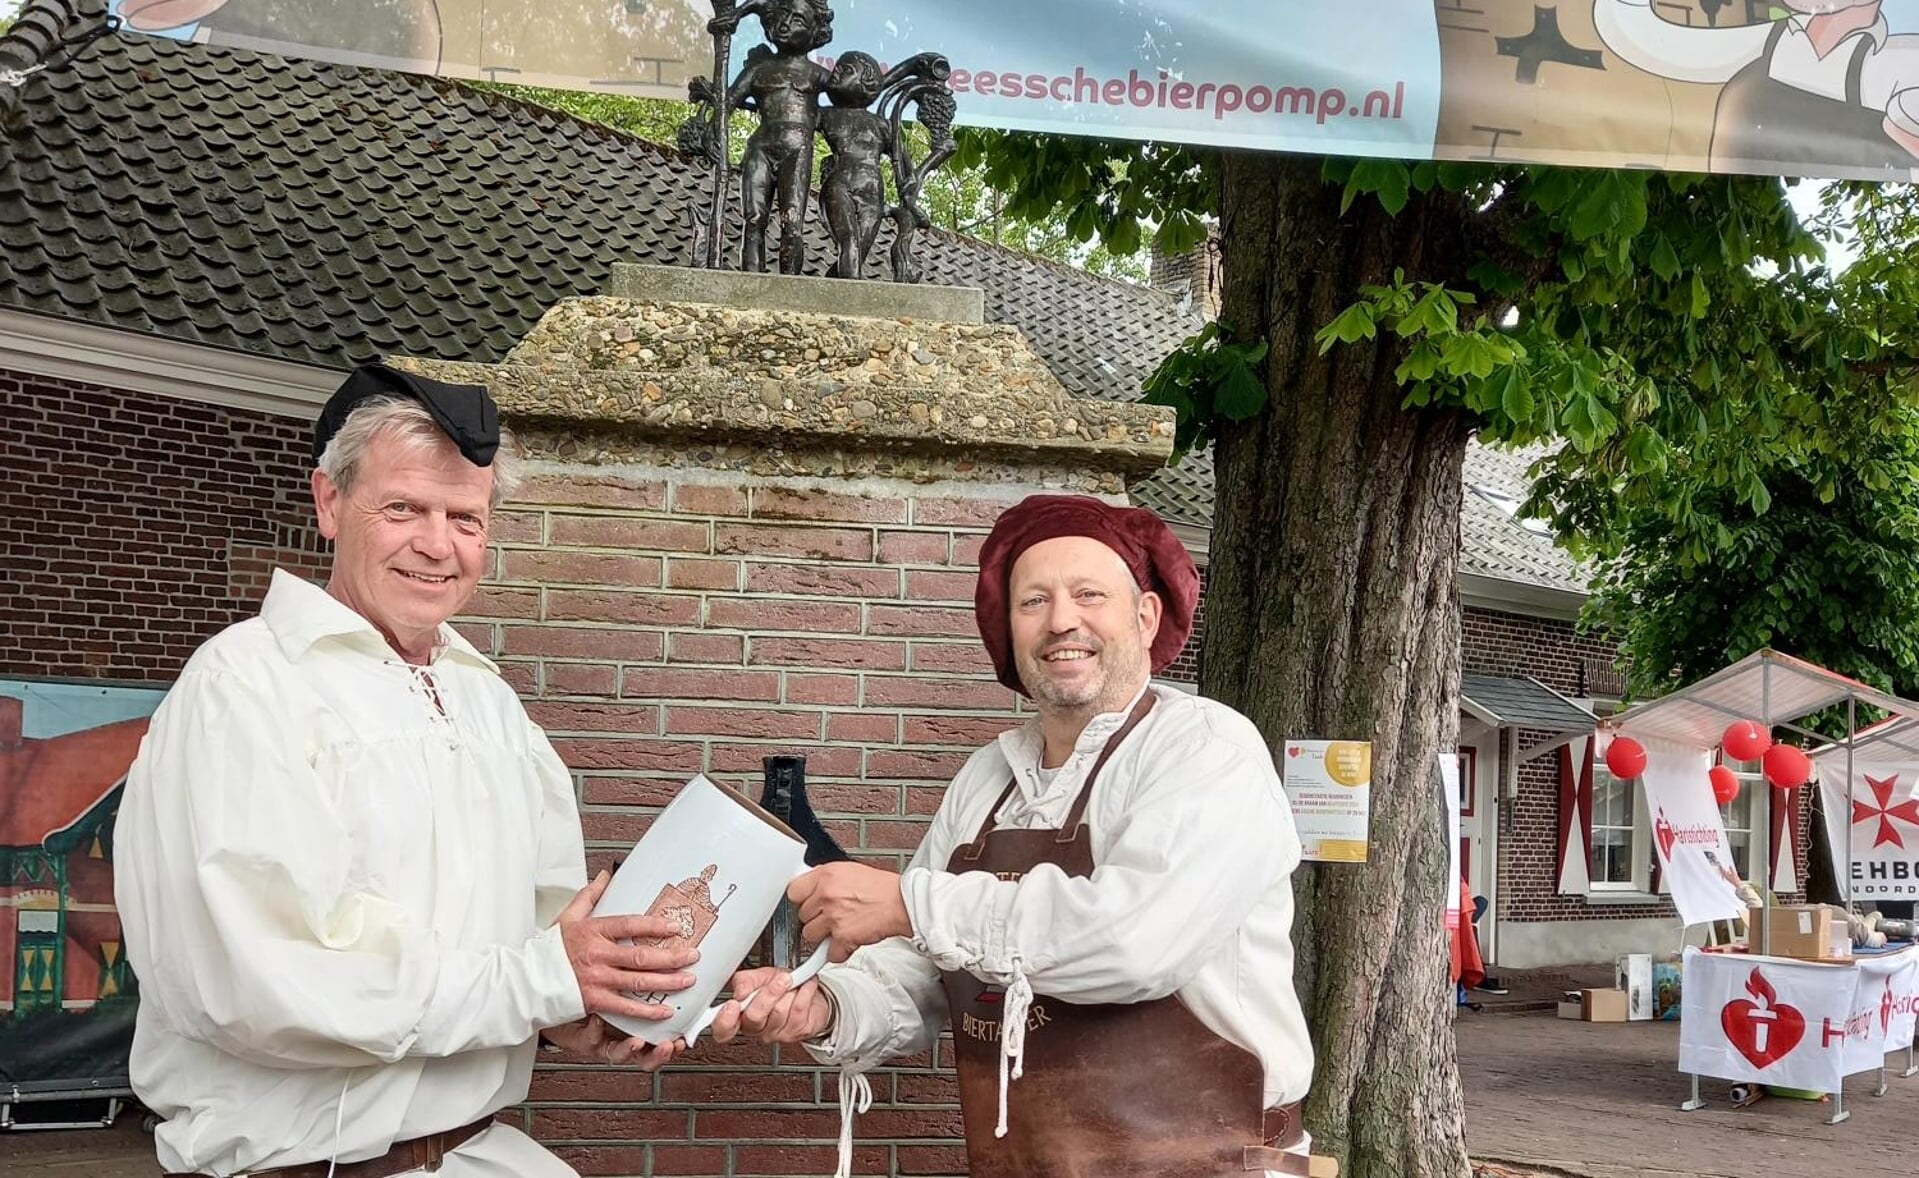 Gerard Pijnenburg (links) neemt de pul over van Gerrie van der Mee, die stopt als onbezoldigd gemeentelijk biertapper. Gerard stapt in de voetsporen van zijn vader, de eerste biertapper van Esch.